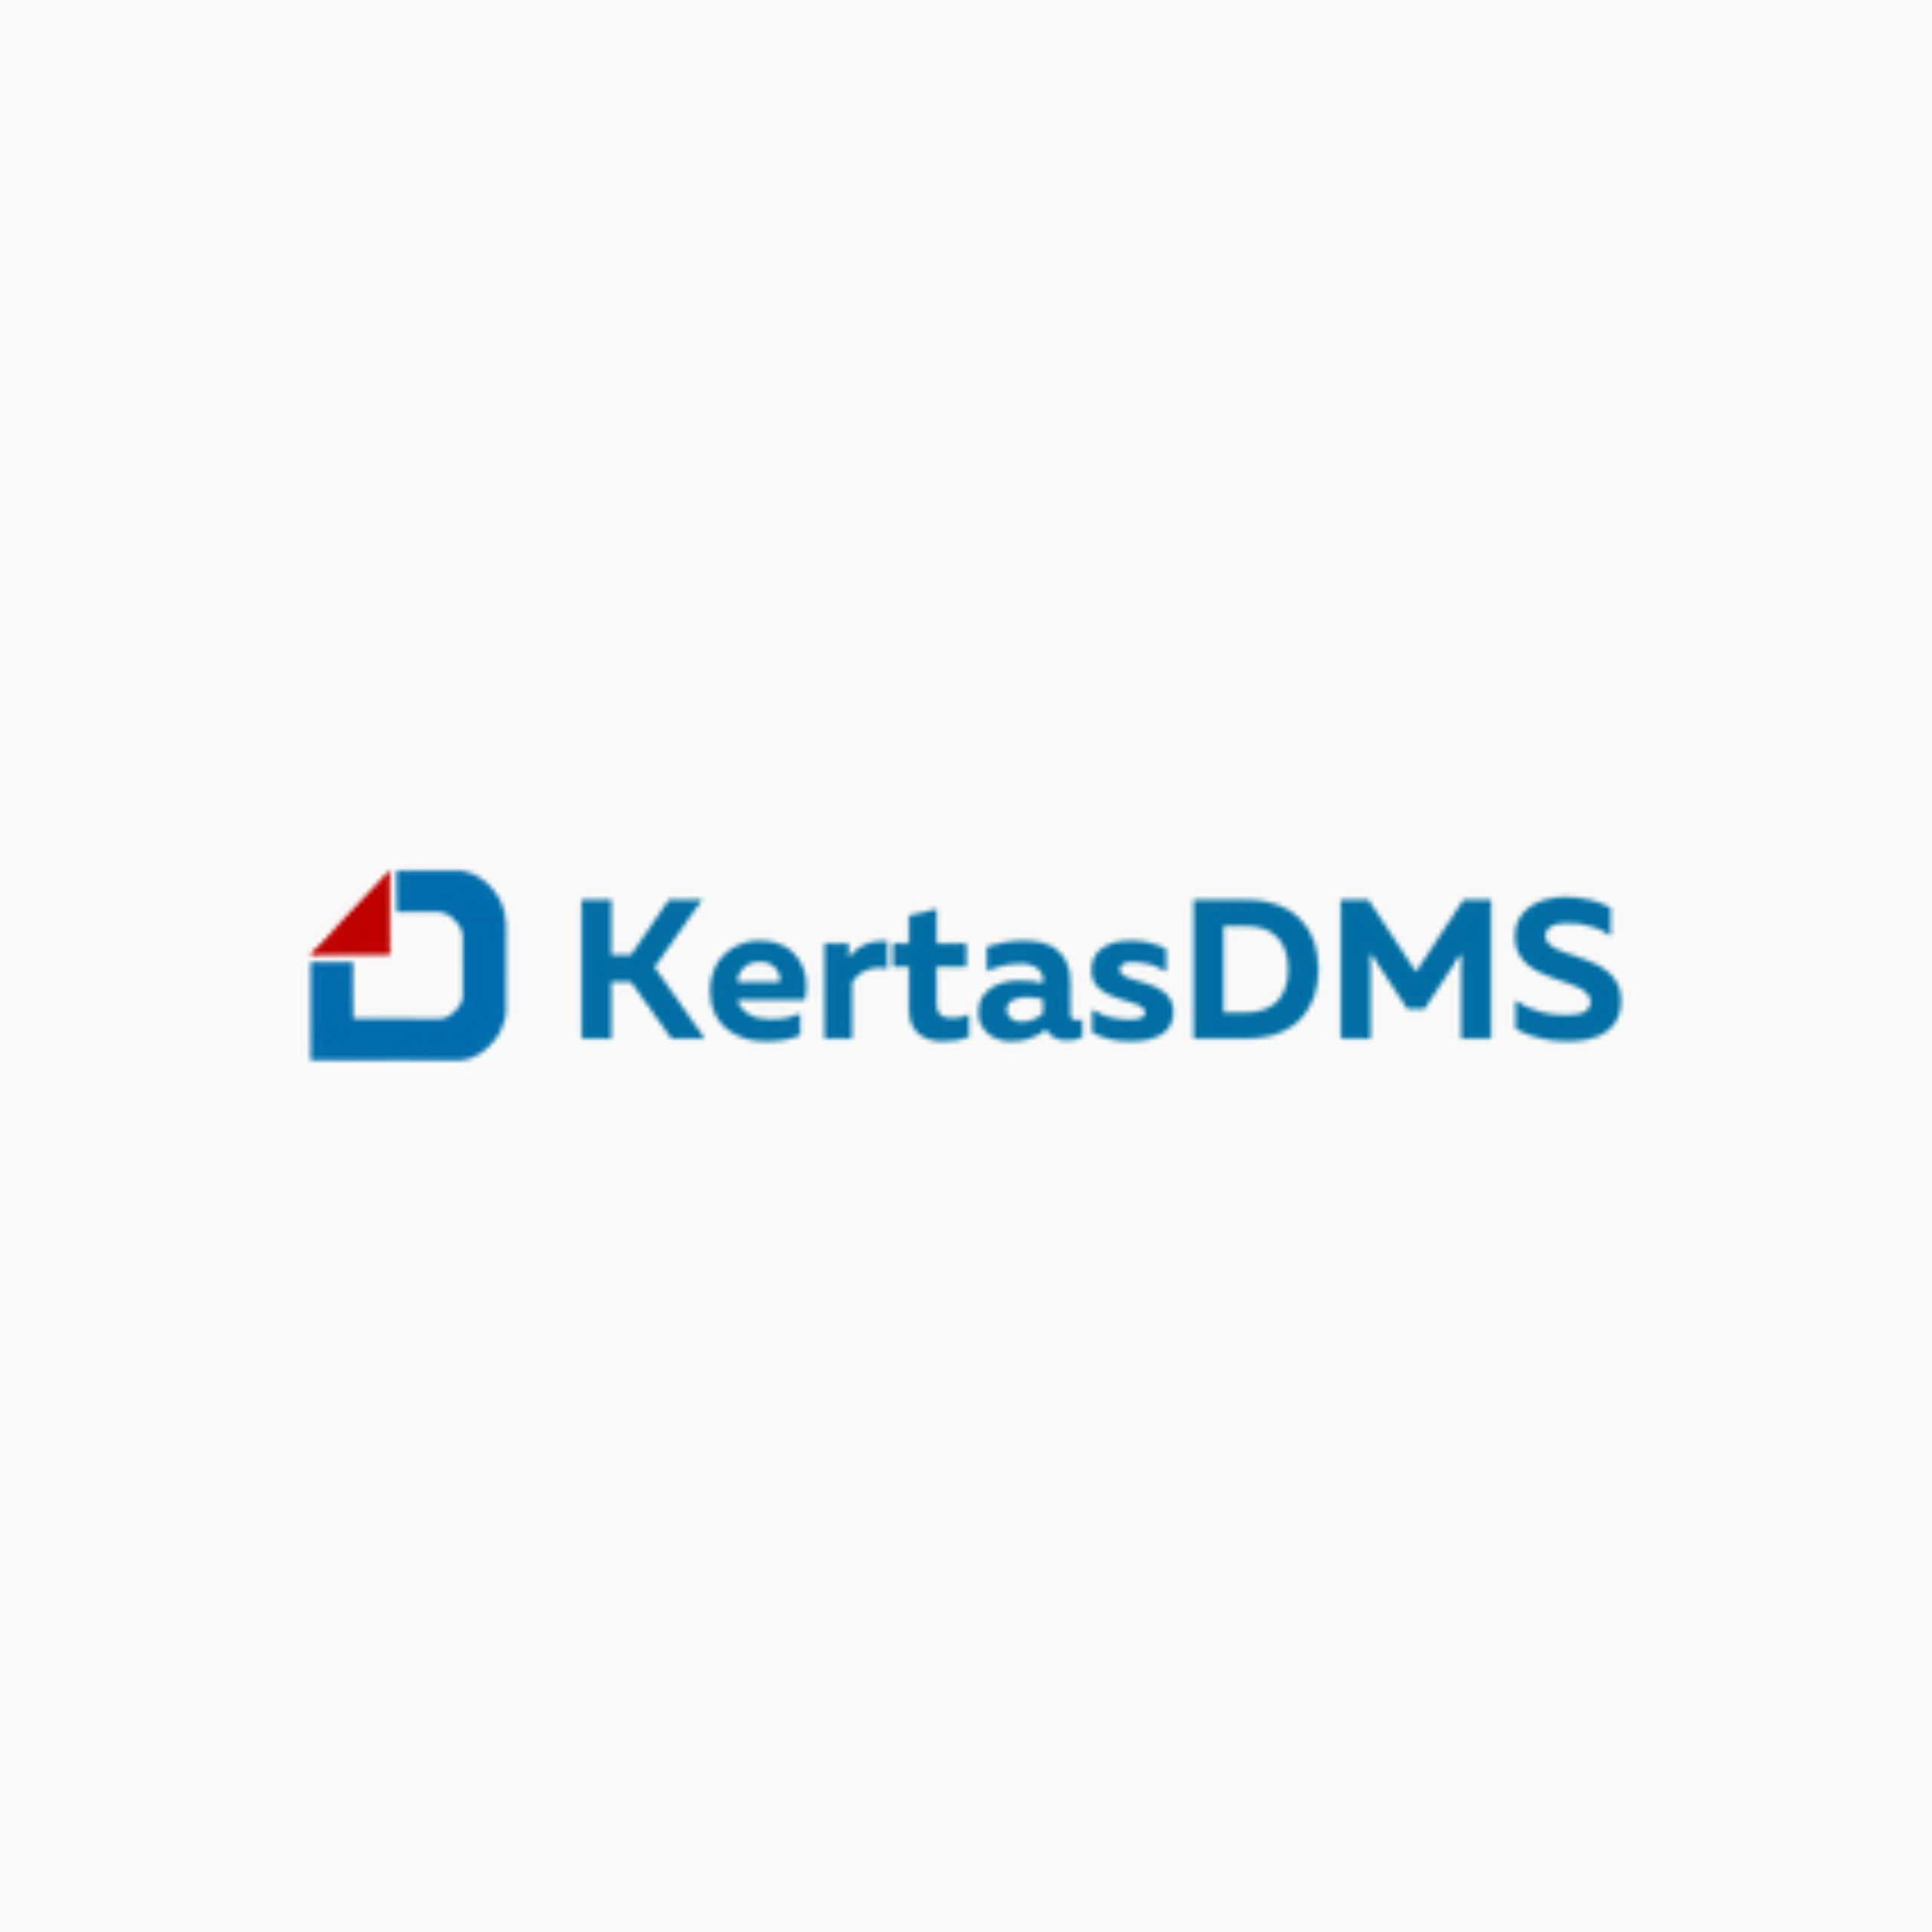 01-kertasdms_logo